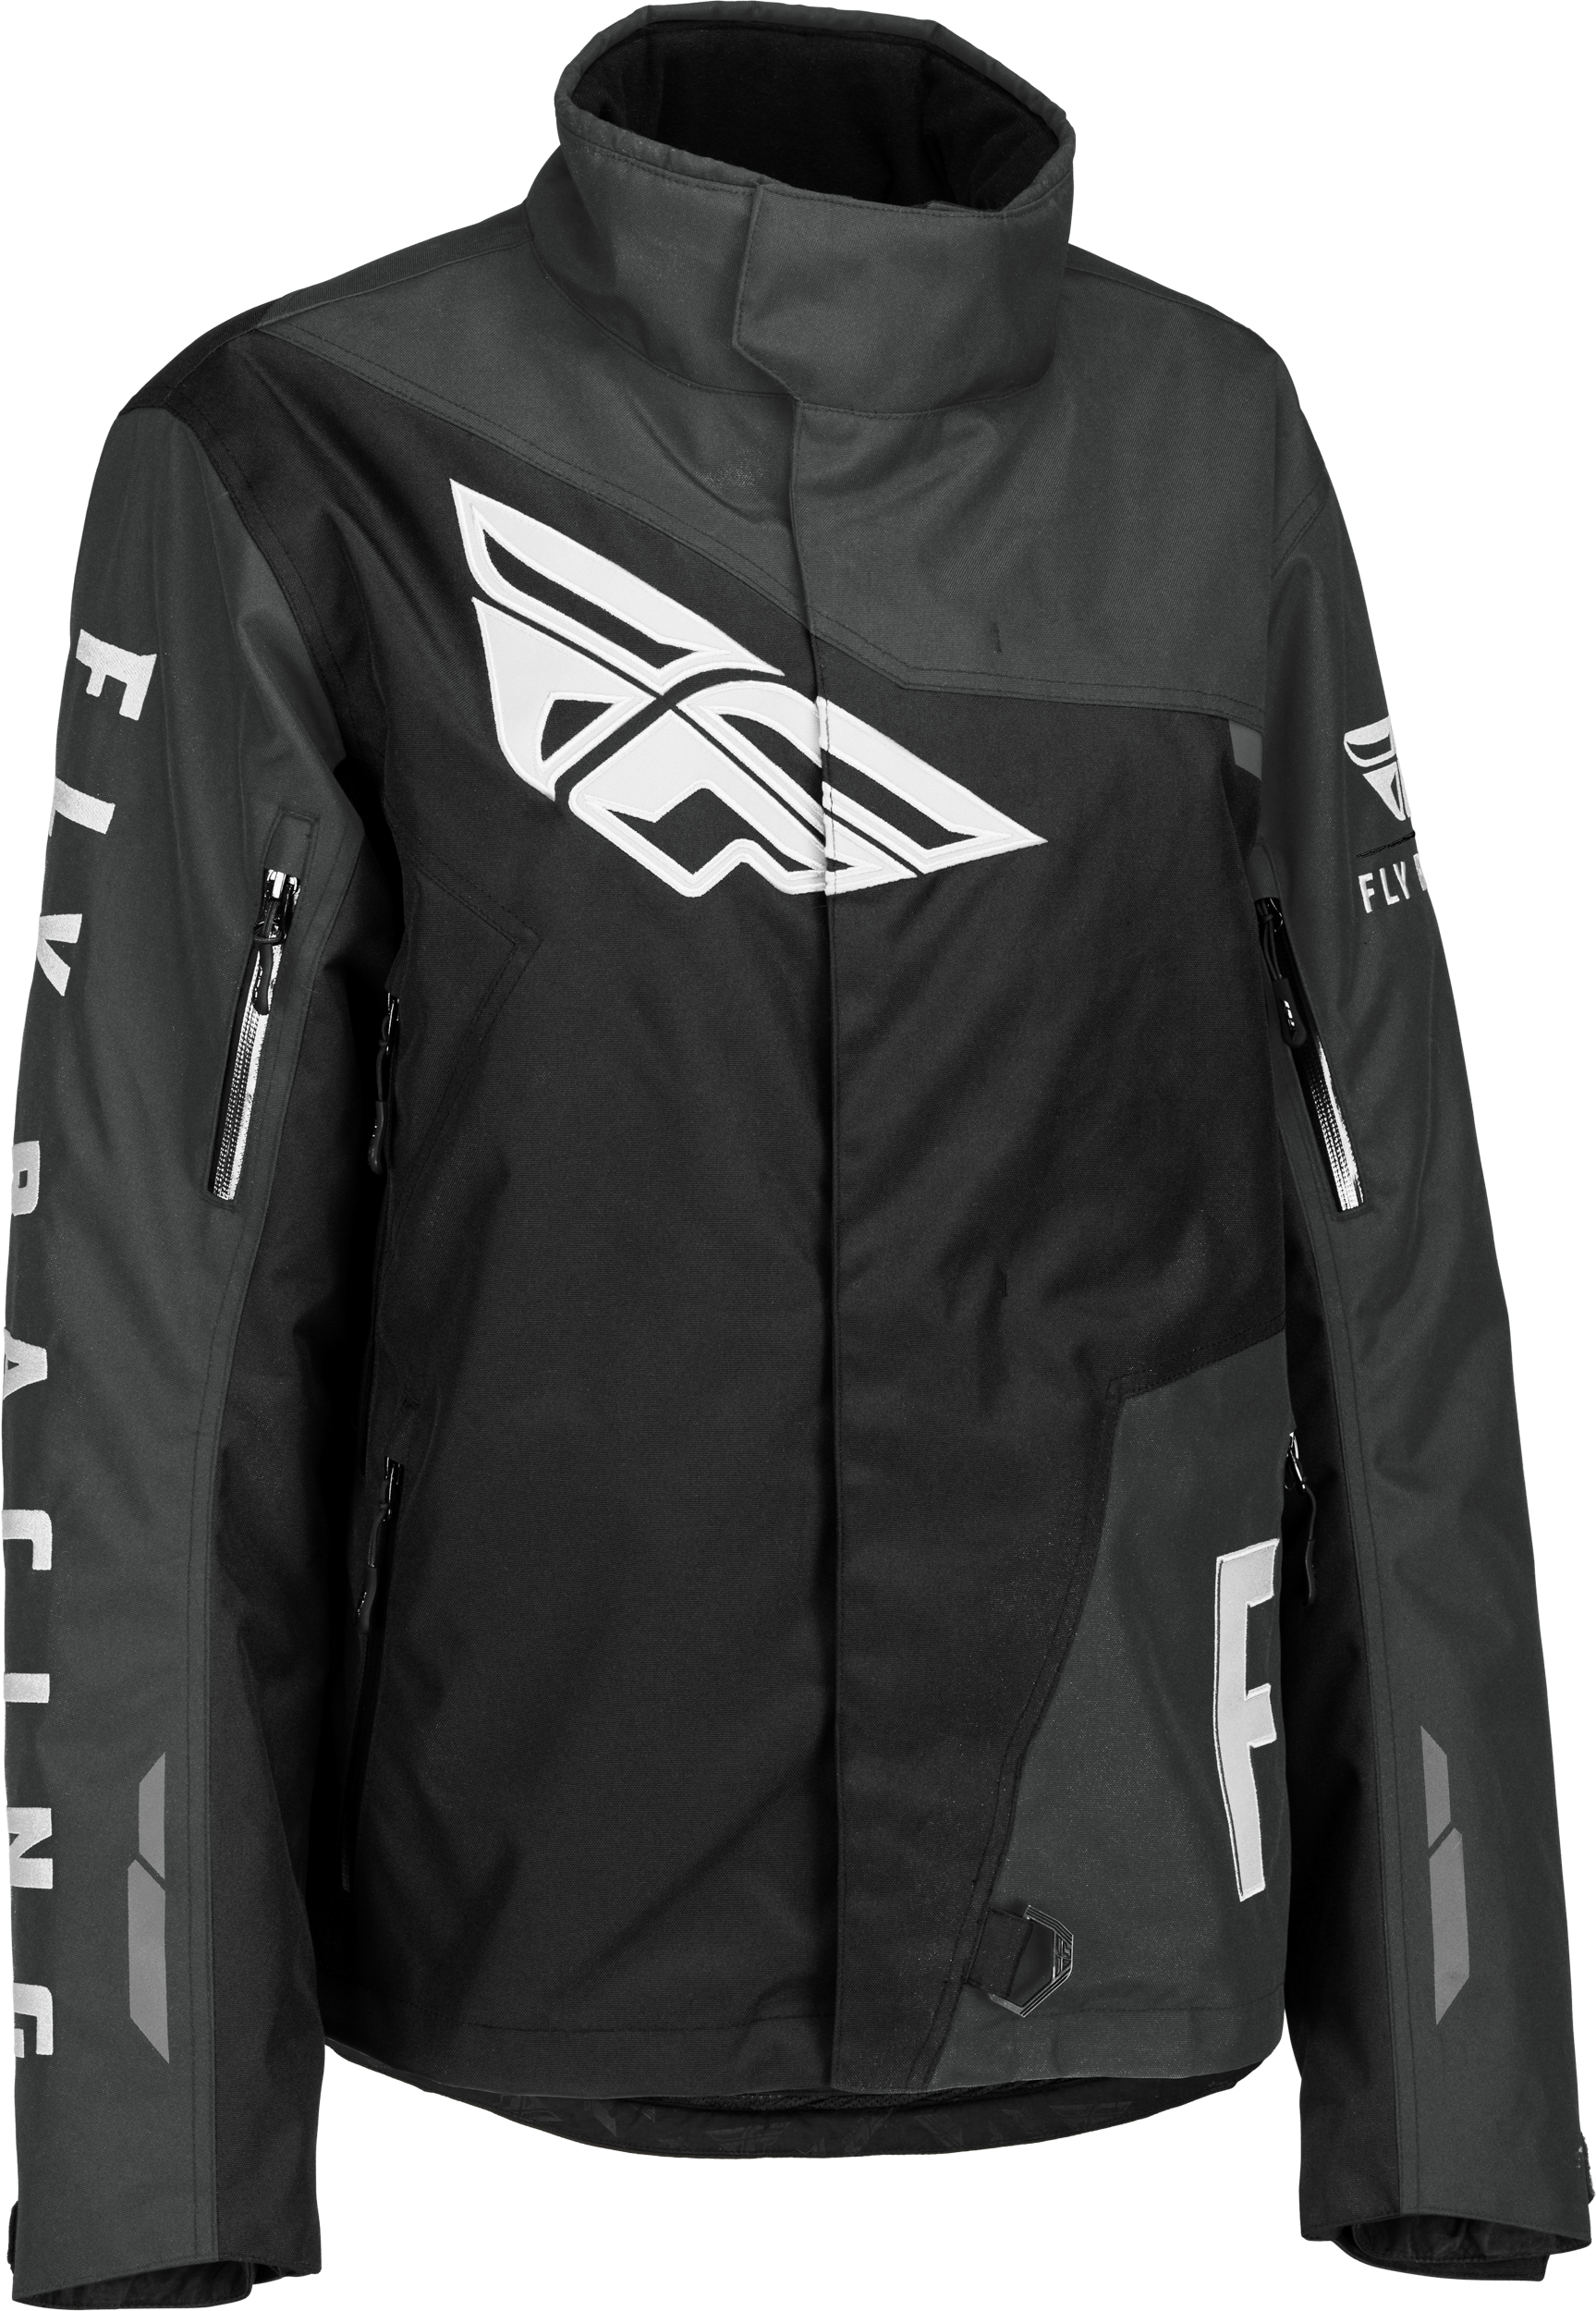 Western Powersports Jacket Black/Grey / 2X Women's Snx Pro Jacket By Fly Racing 470-45112X